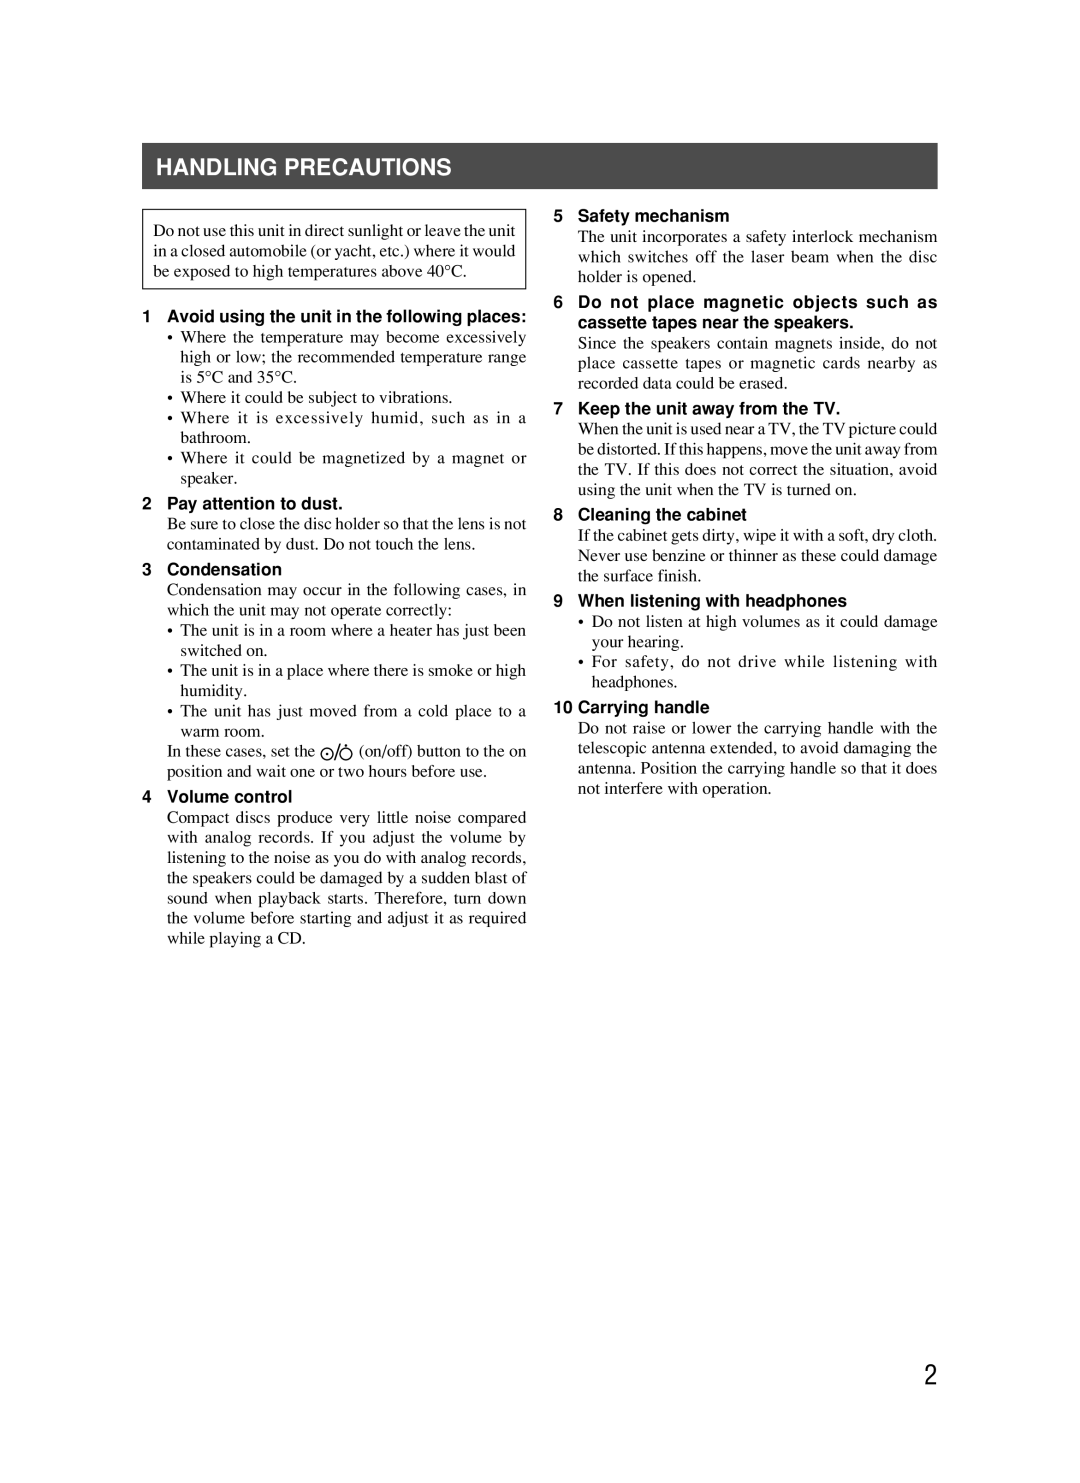 JVC RC-BM5 manual Handling Precautions 